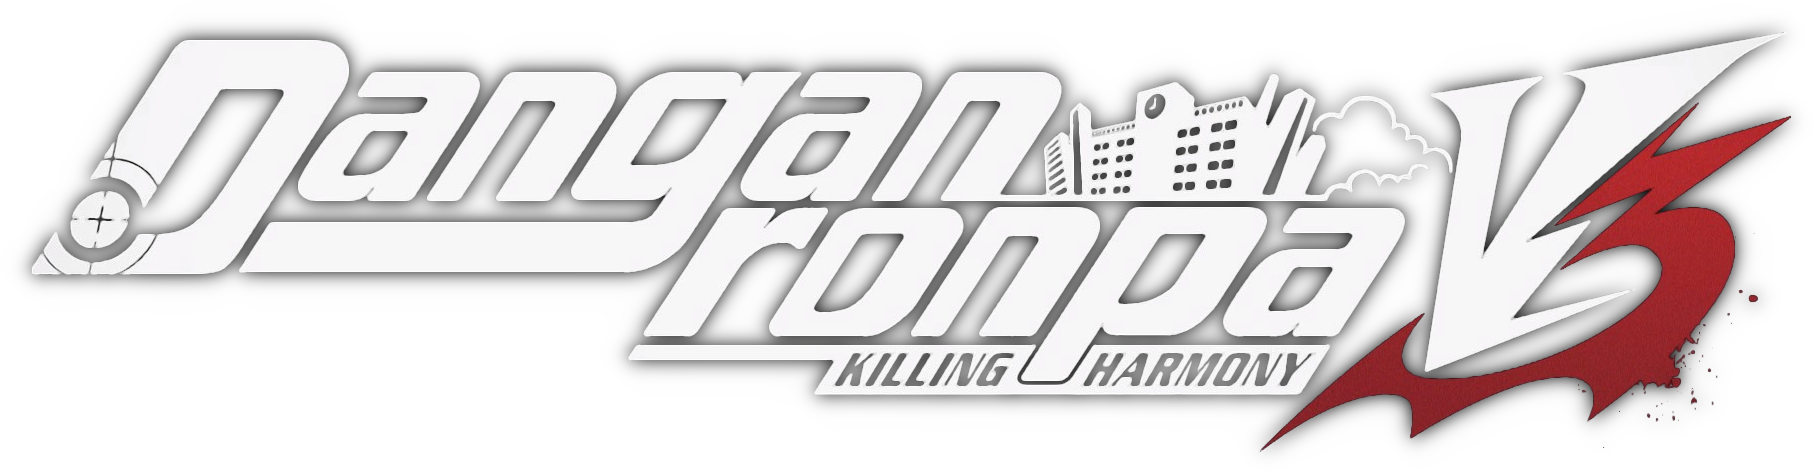 Danganronpa logo PNG Immagine di immagine